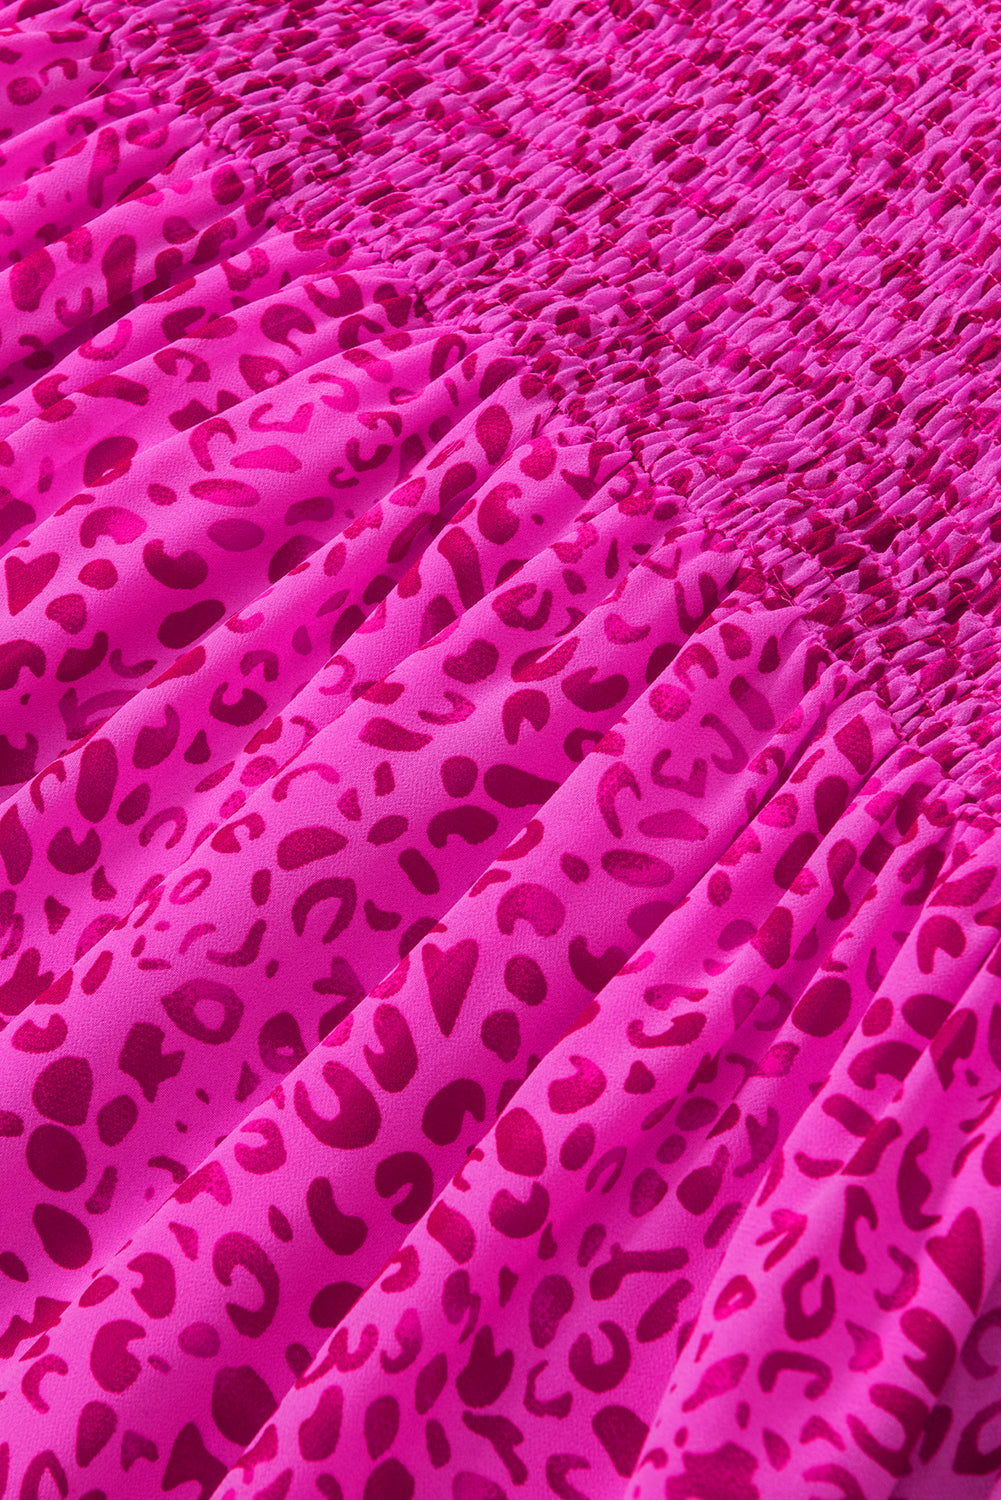 Fließende Bluse mit gerafften Puffärmeln und rosafarbenem Leopardenmuster